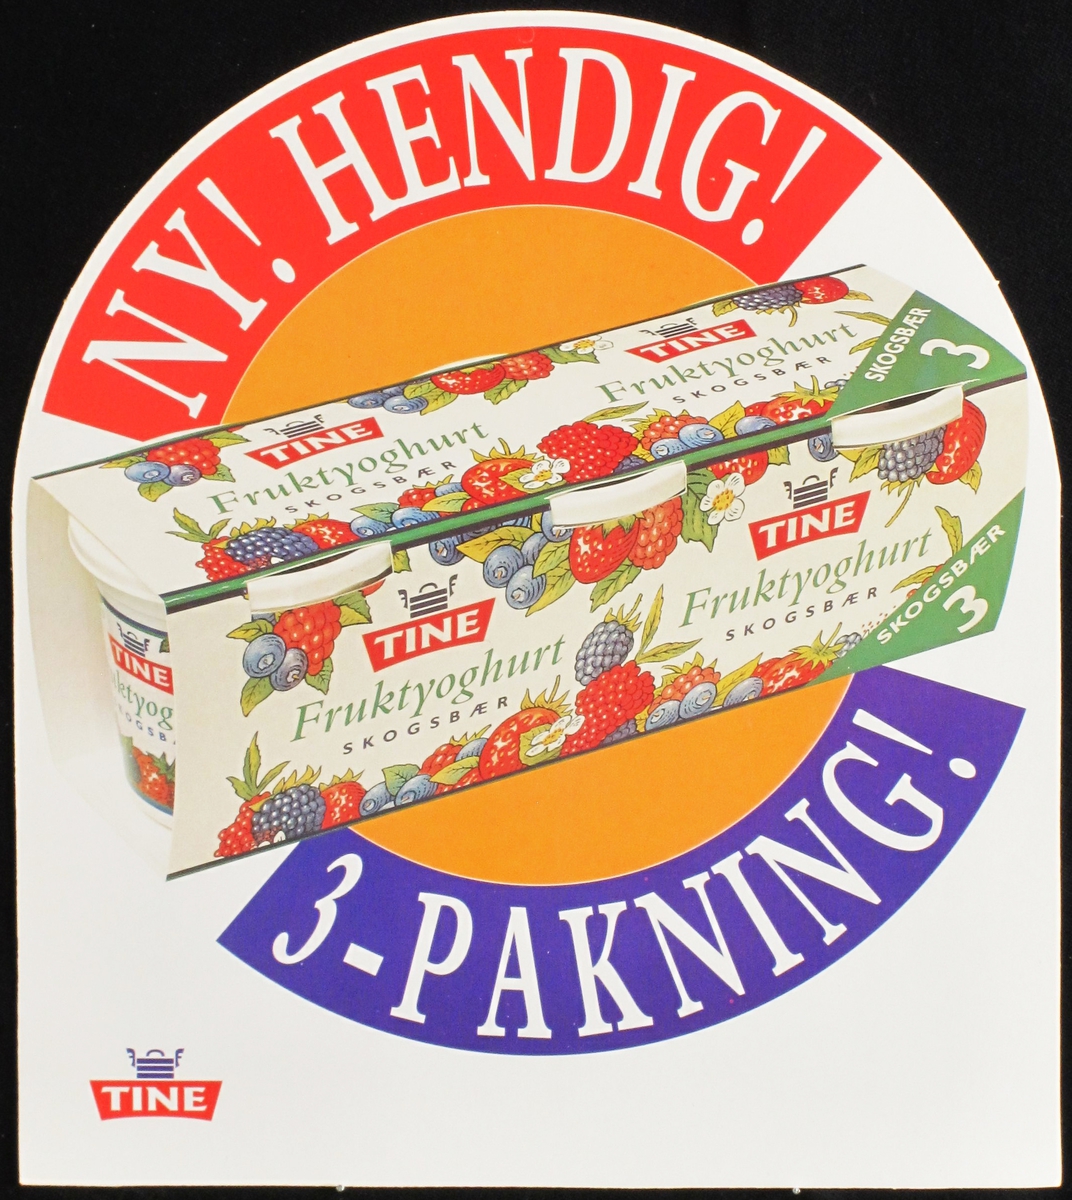 3-pakning fruktyoghurt skogsbær, Tine varemerke